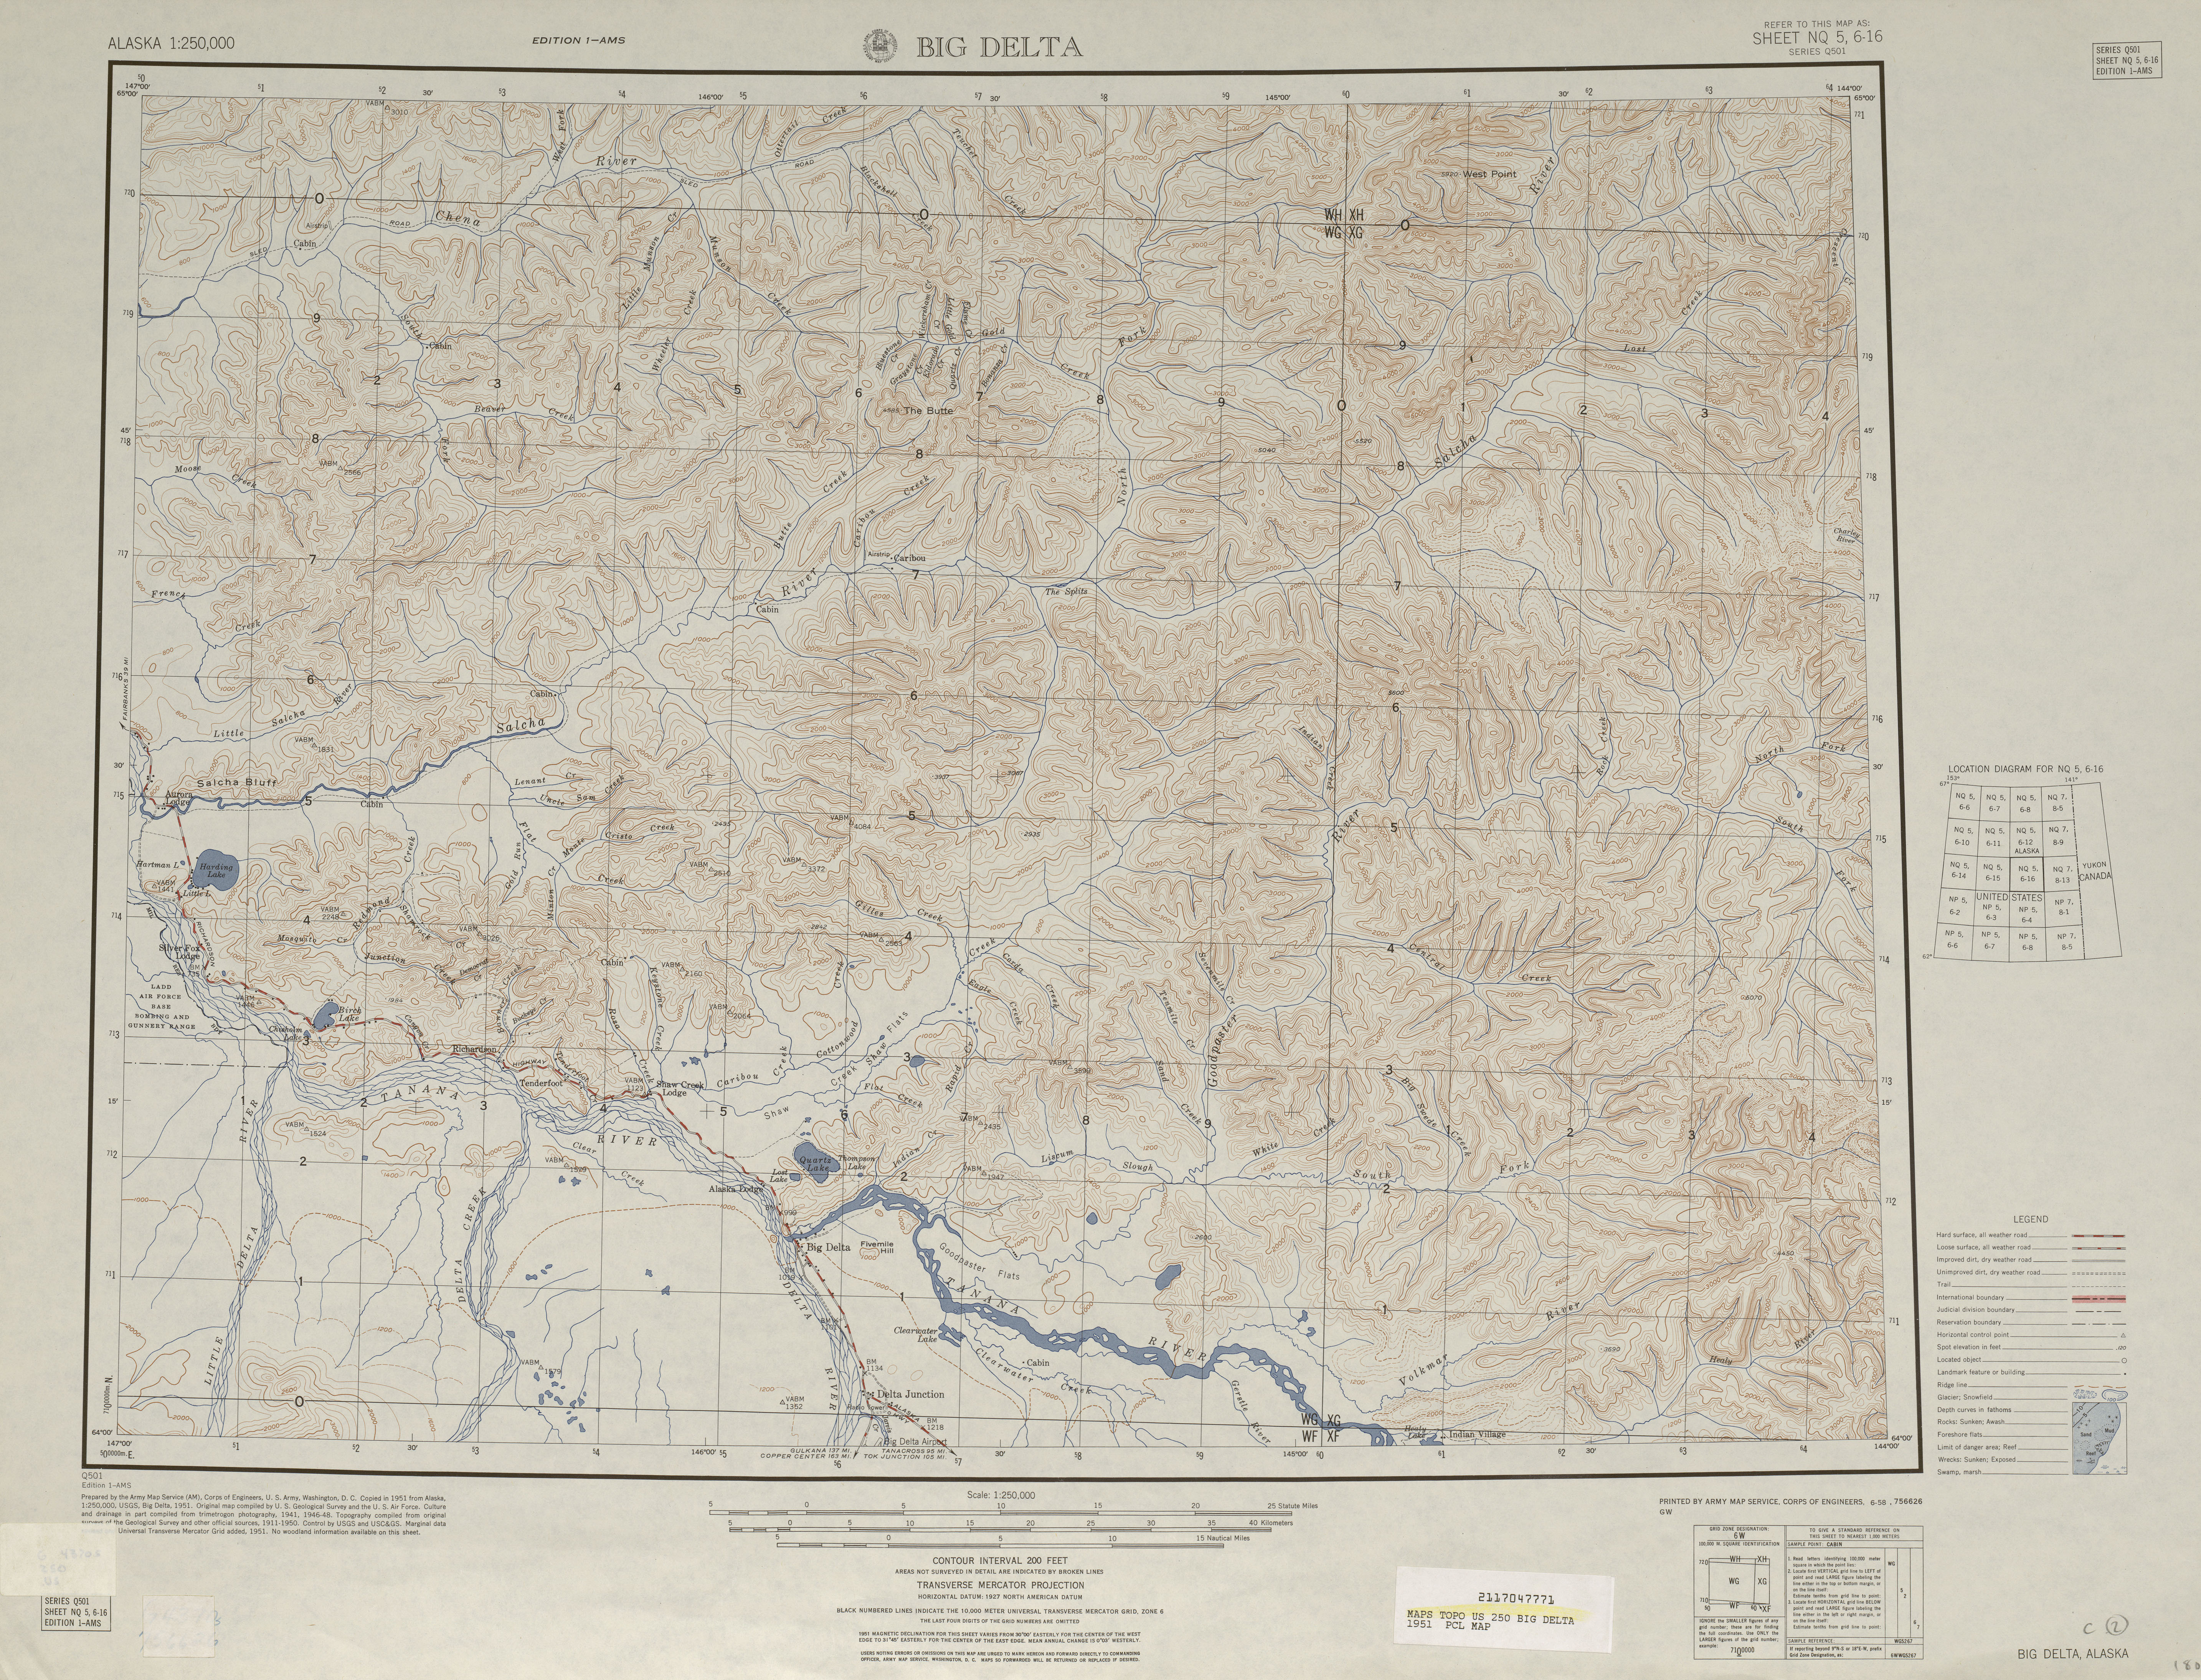 Hoja Big Delta del Mapa Topográfico de los Estados Unidos 1951